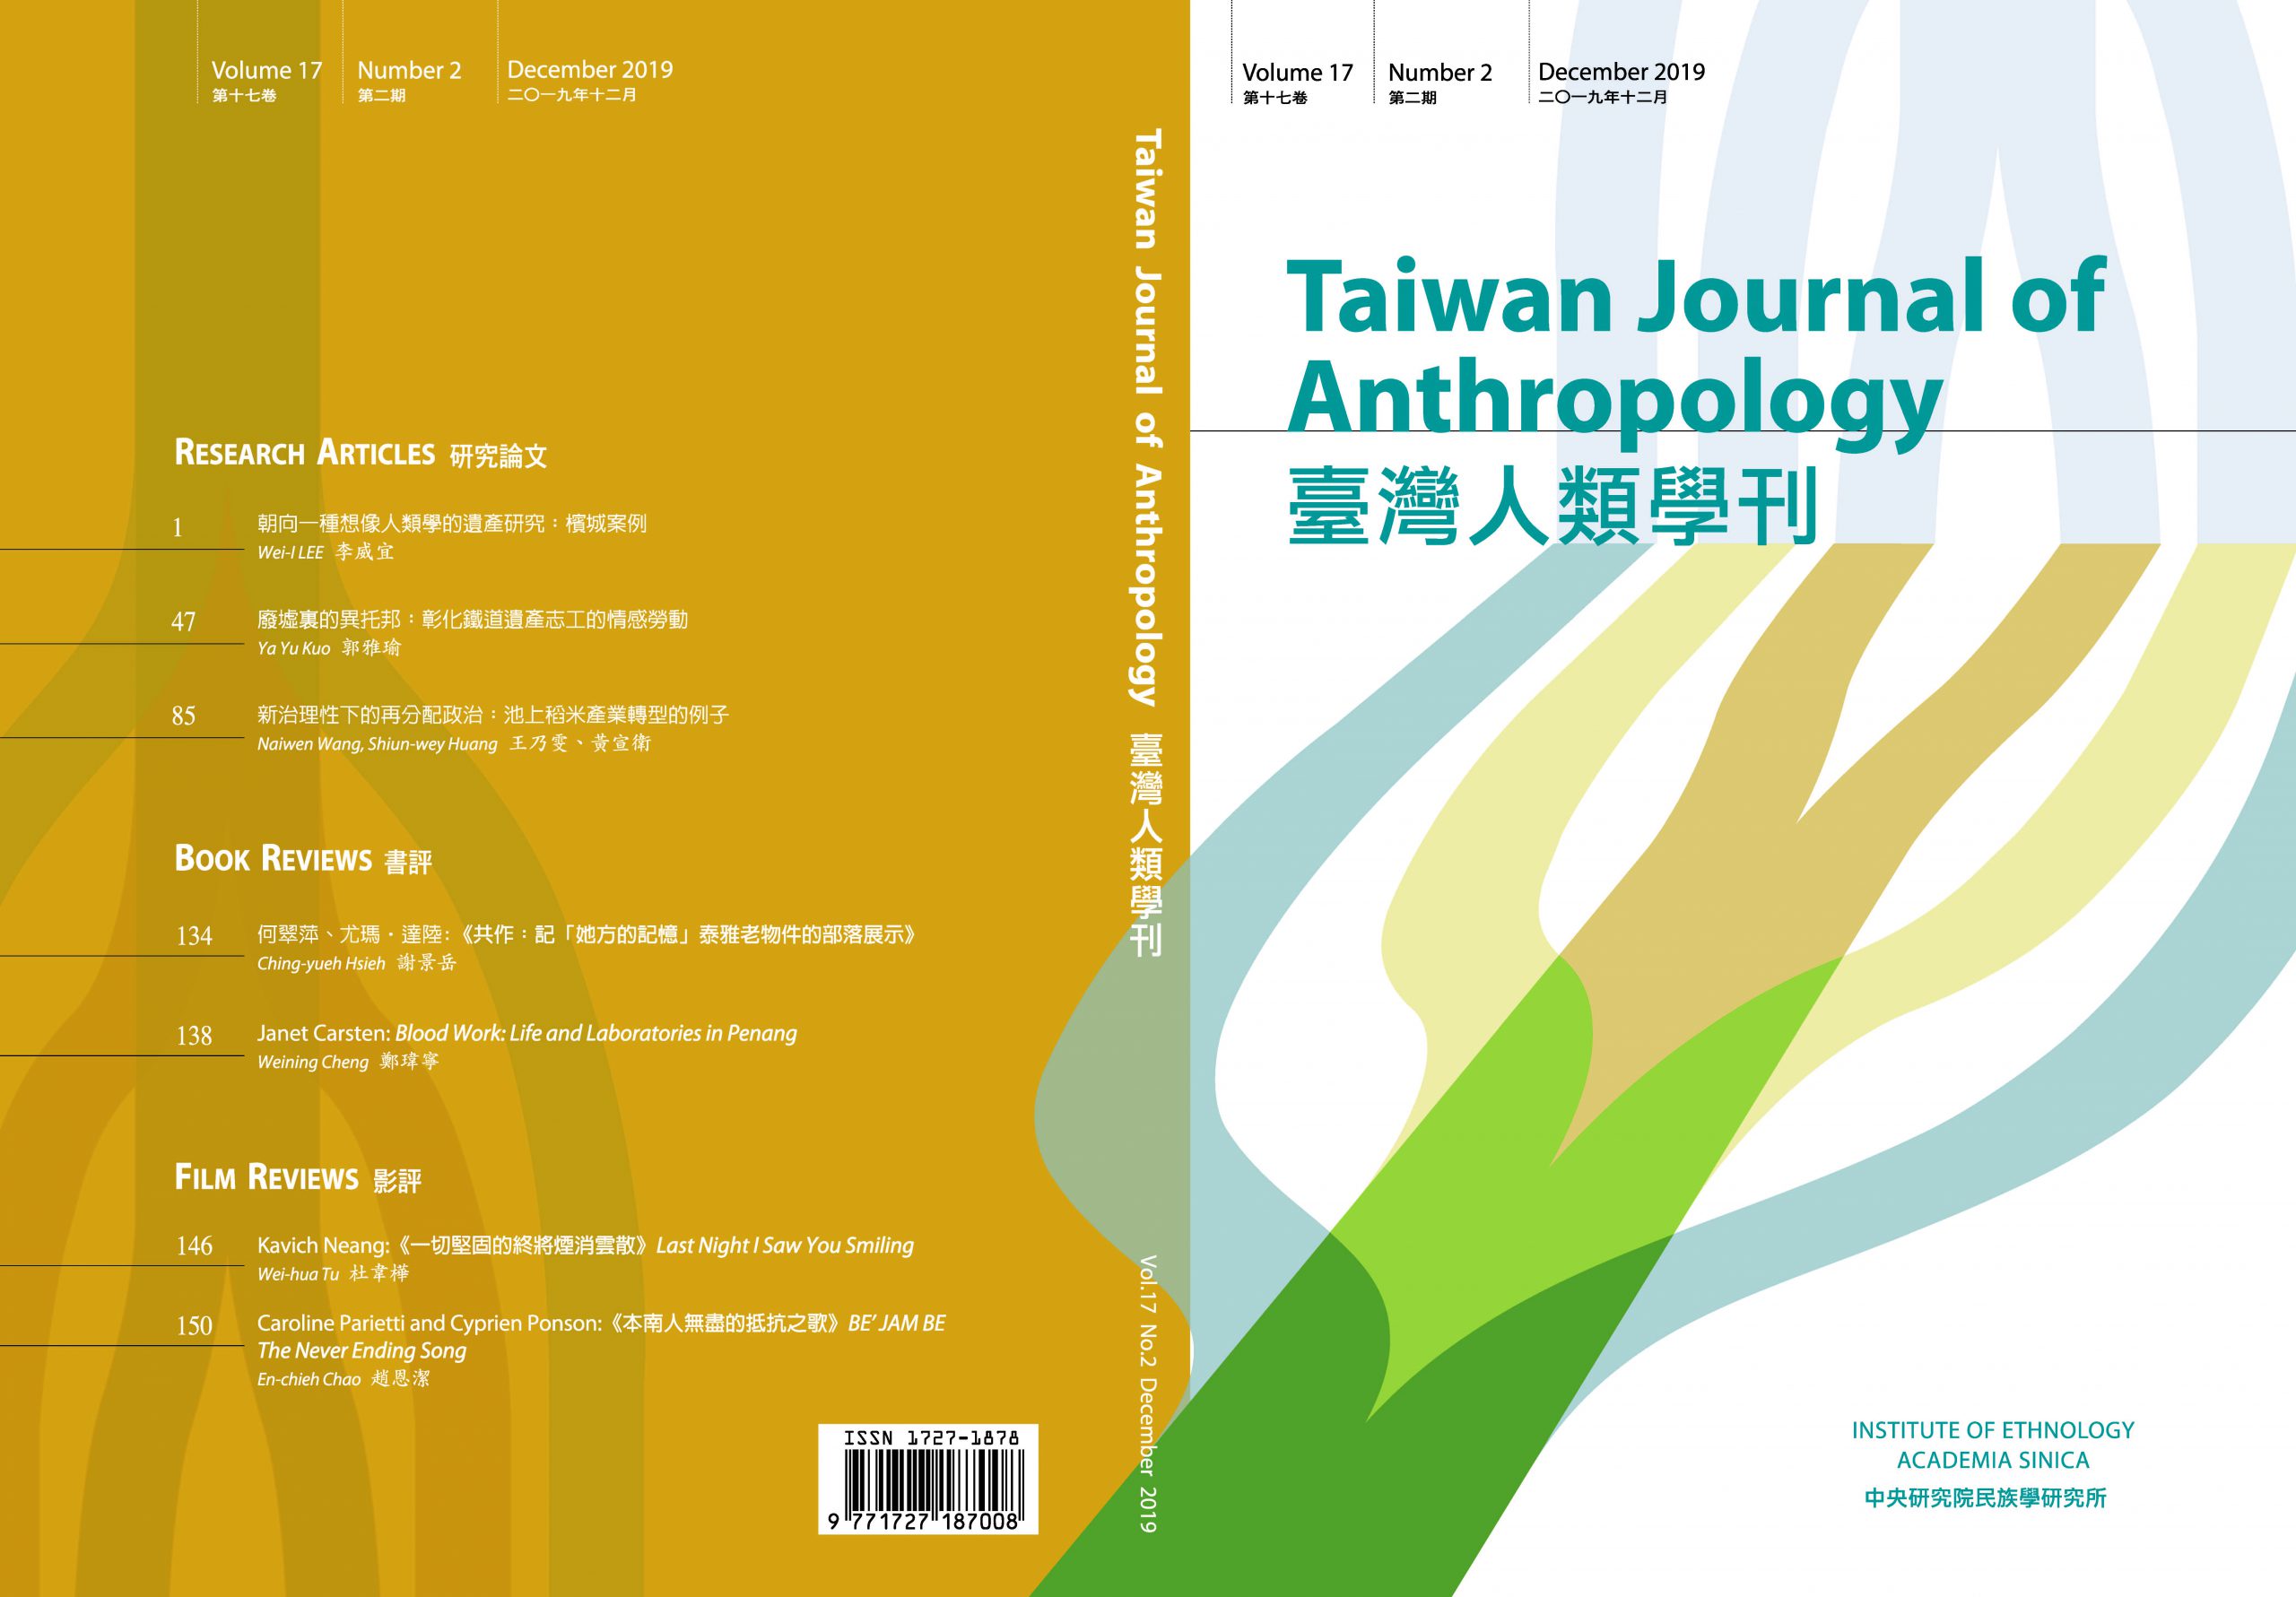 《臺灣人類學刊》第17卷第2期已出刊